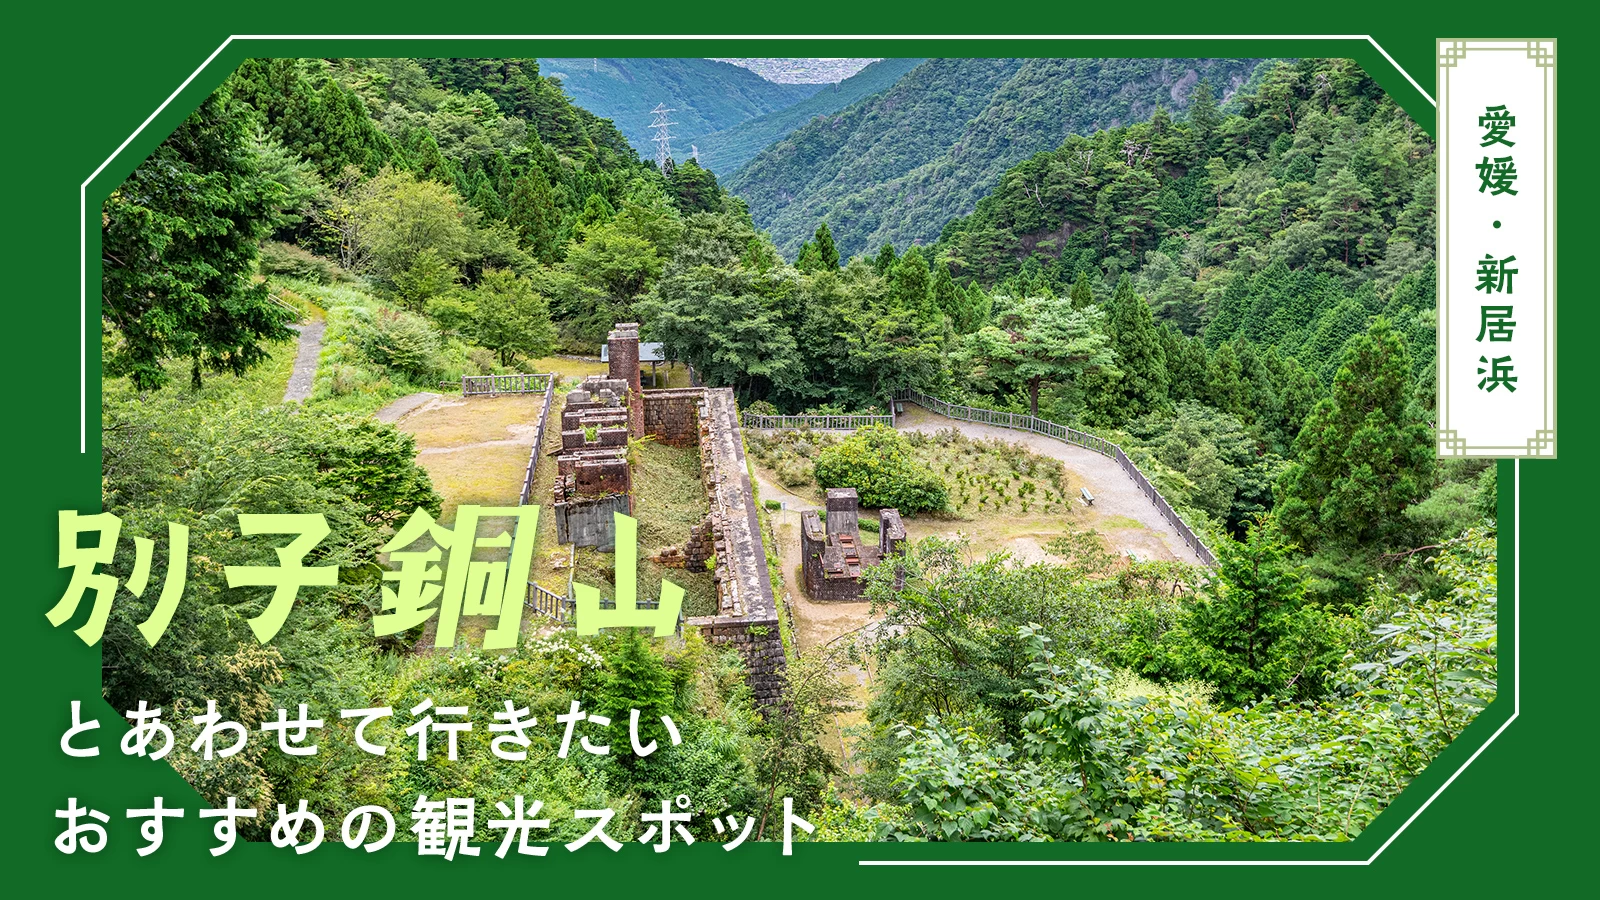 【愛媛・新居浜観光】別子銅山とあわせて行きたいおすすめの観光スポット11選